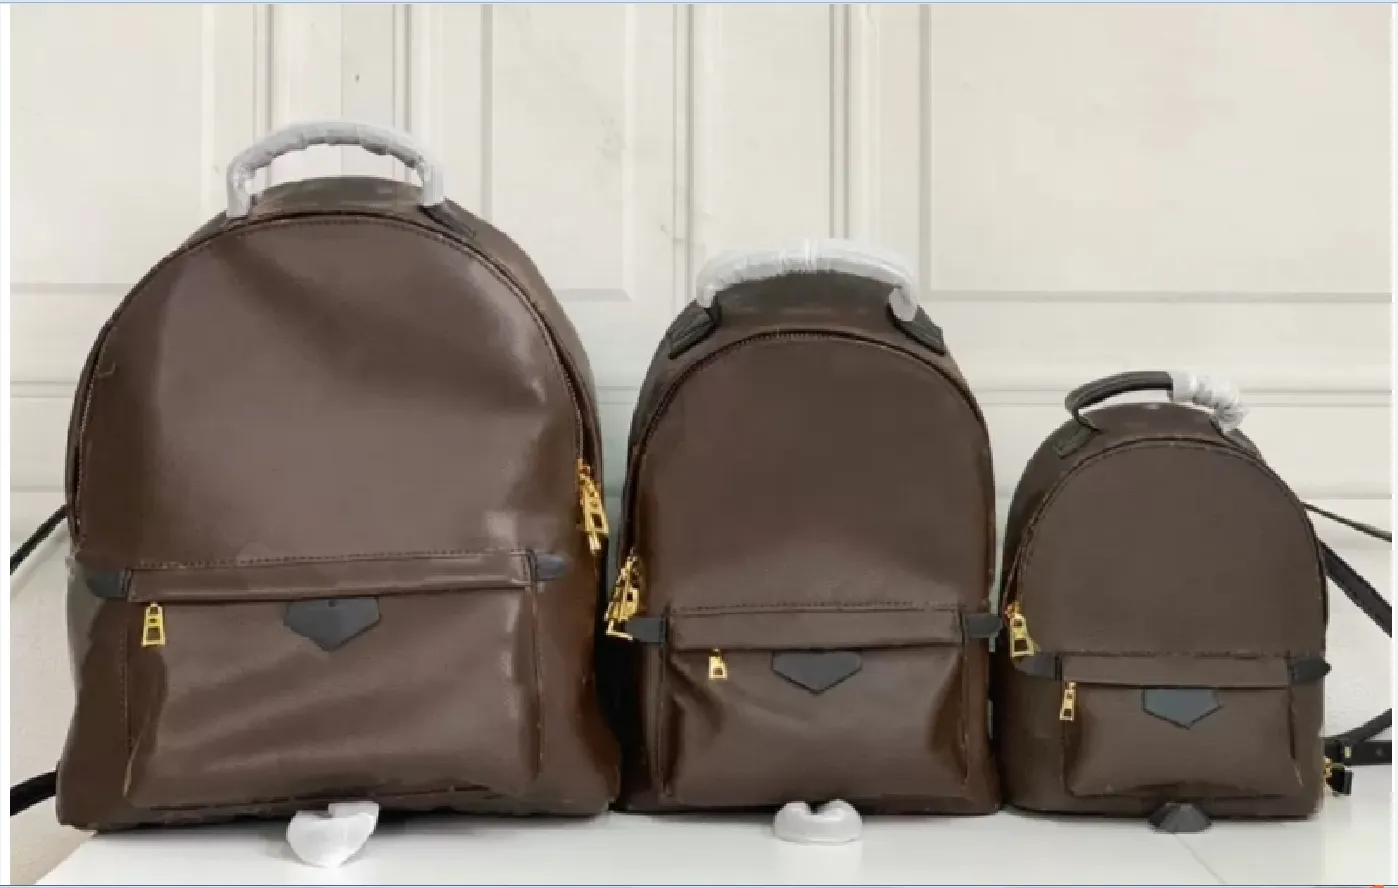 MINI 22cm Middle 29cm كبيرة 33 سم حقائب مدرسية جلدية حقيقية حقيبة ظهر مصممة حقائب اليد على الظهر حقيبة الظهر orignal الكتف الكبيرة 2705